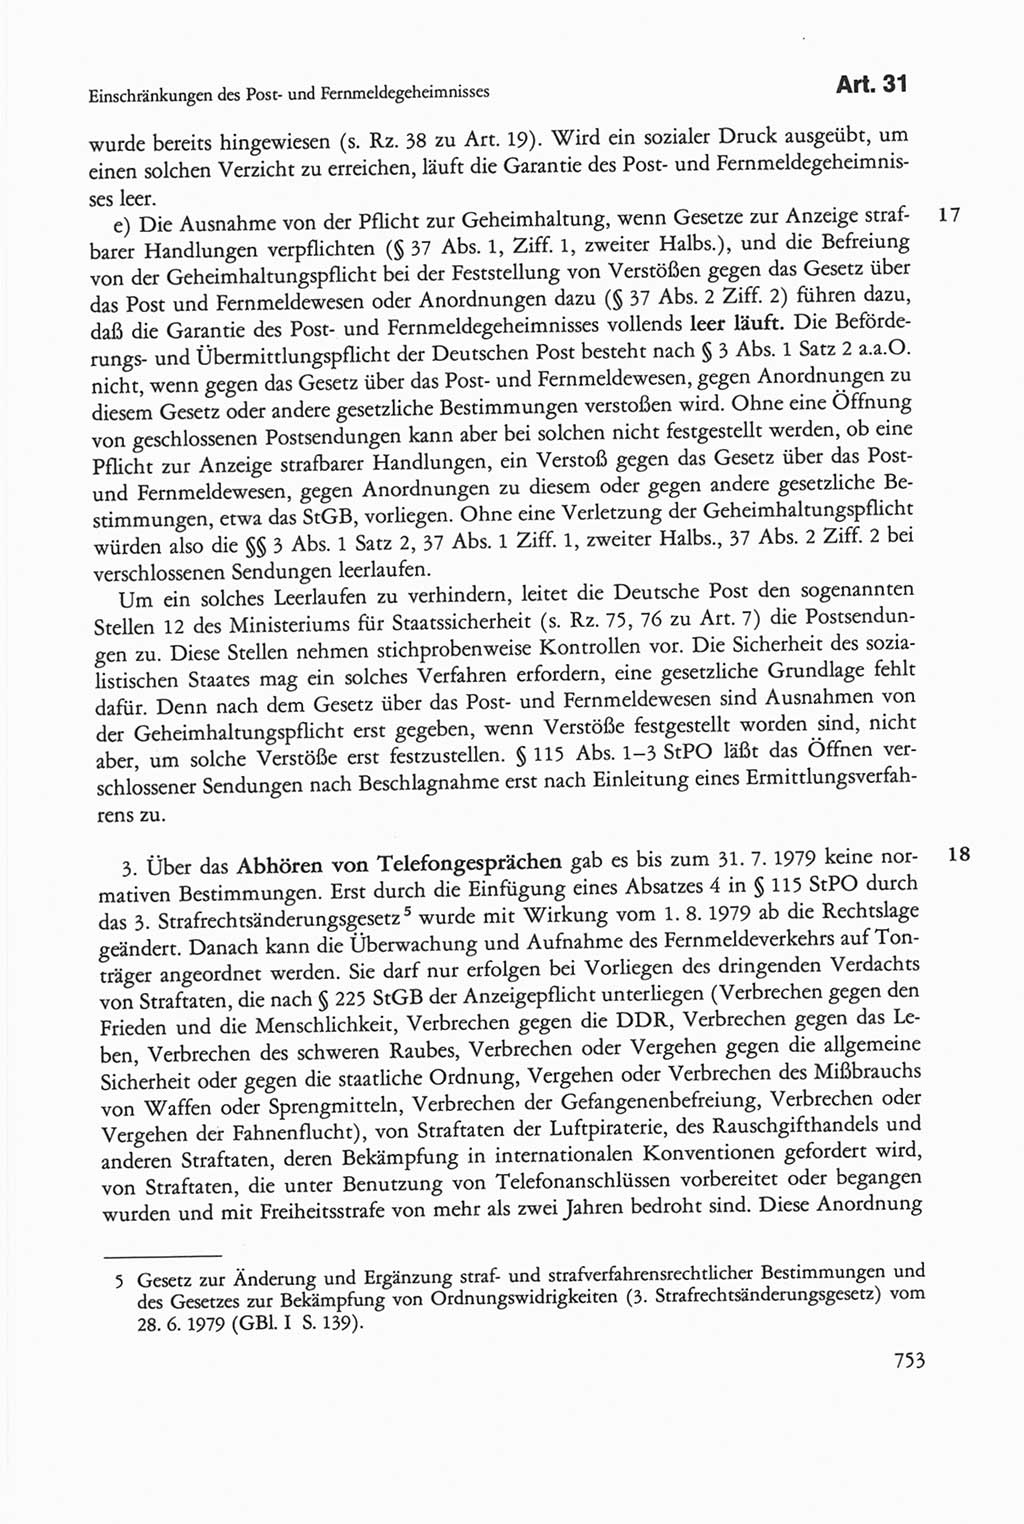 Die sozialistische Verfassung der Deutschen Demokratischen Republik (DDR), Kommentar 1982, Seite 753 (Soz. Verf. DDR Komm. 1982, S. 753)